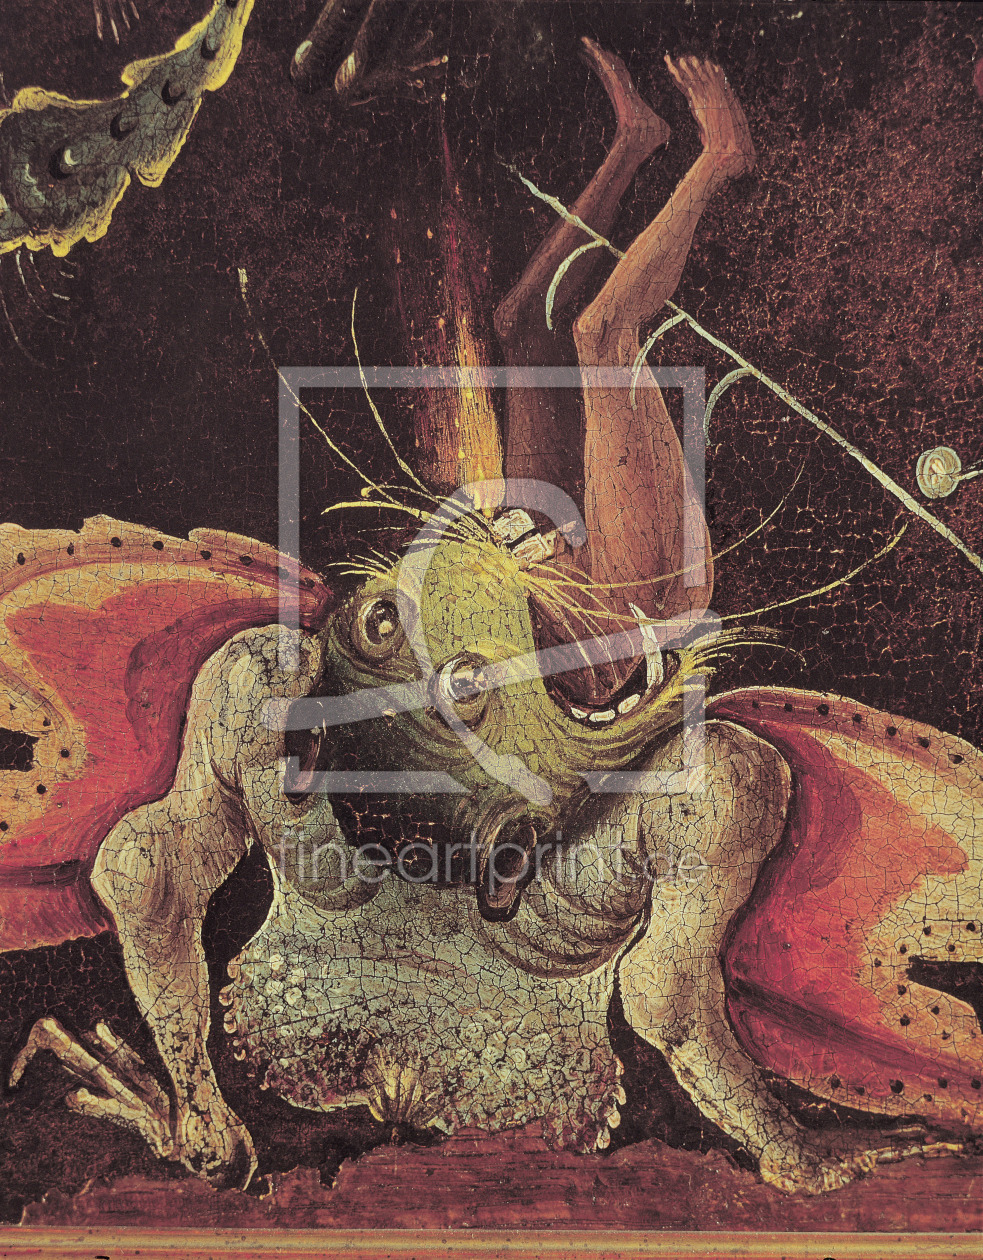 Bild-Nr.: 31000097 The Last Judgement, detail of a man being eaten by a monster, c.1504 erstellt von Bosch, Hieronymus